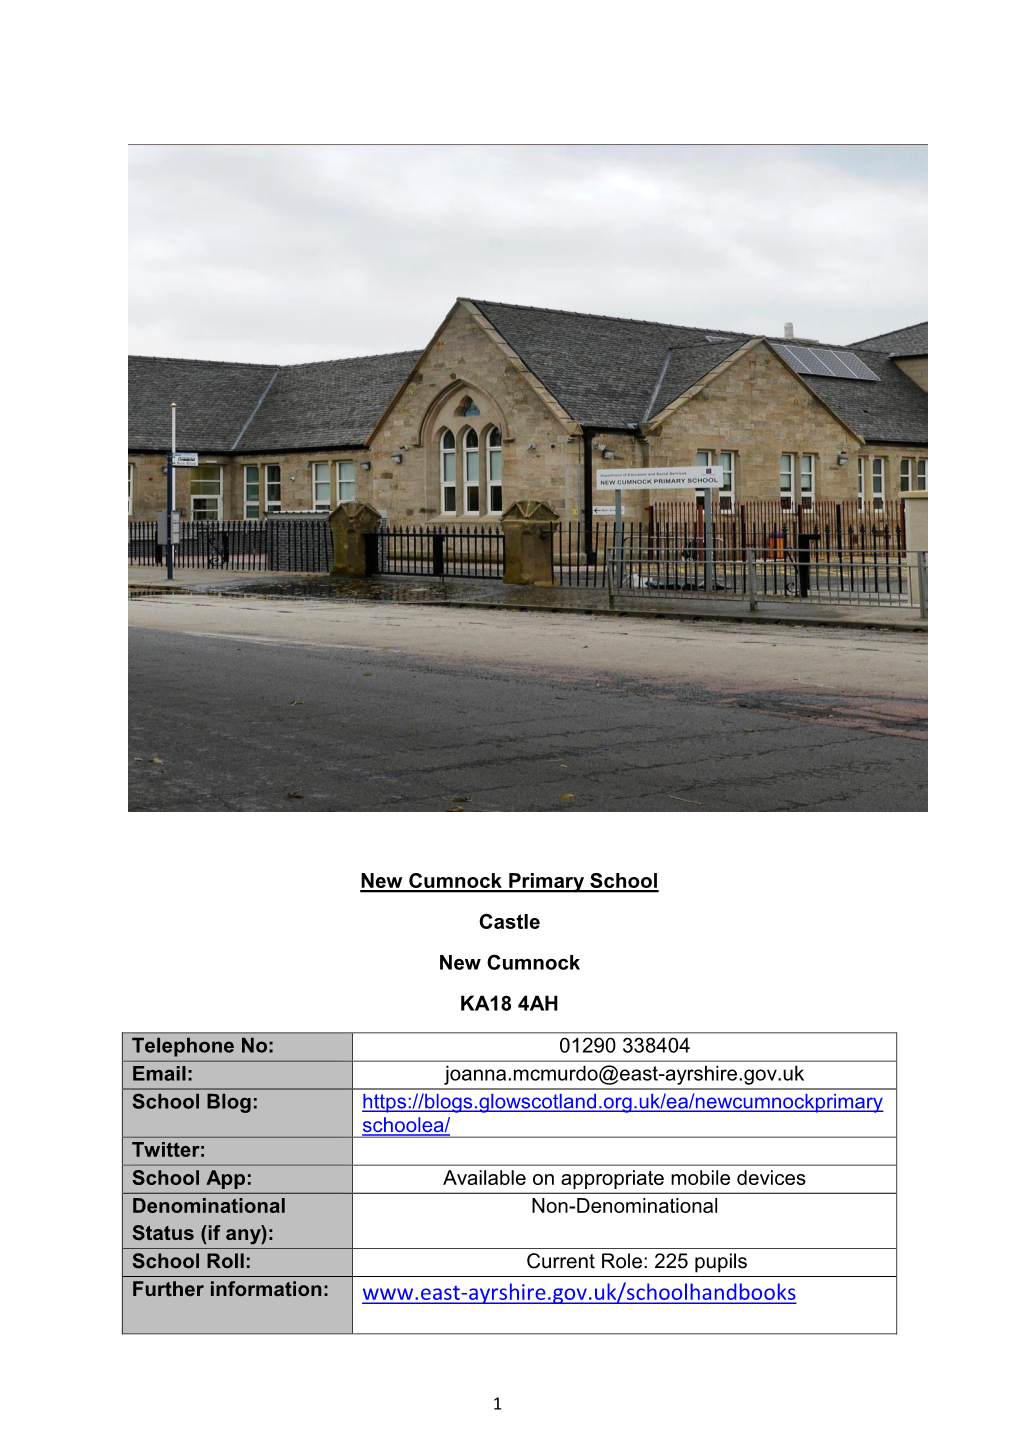 New Cumnock Primary School Handbook